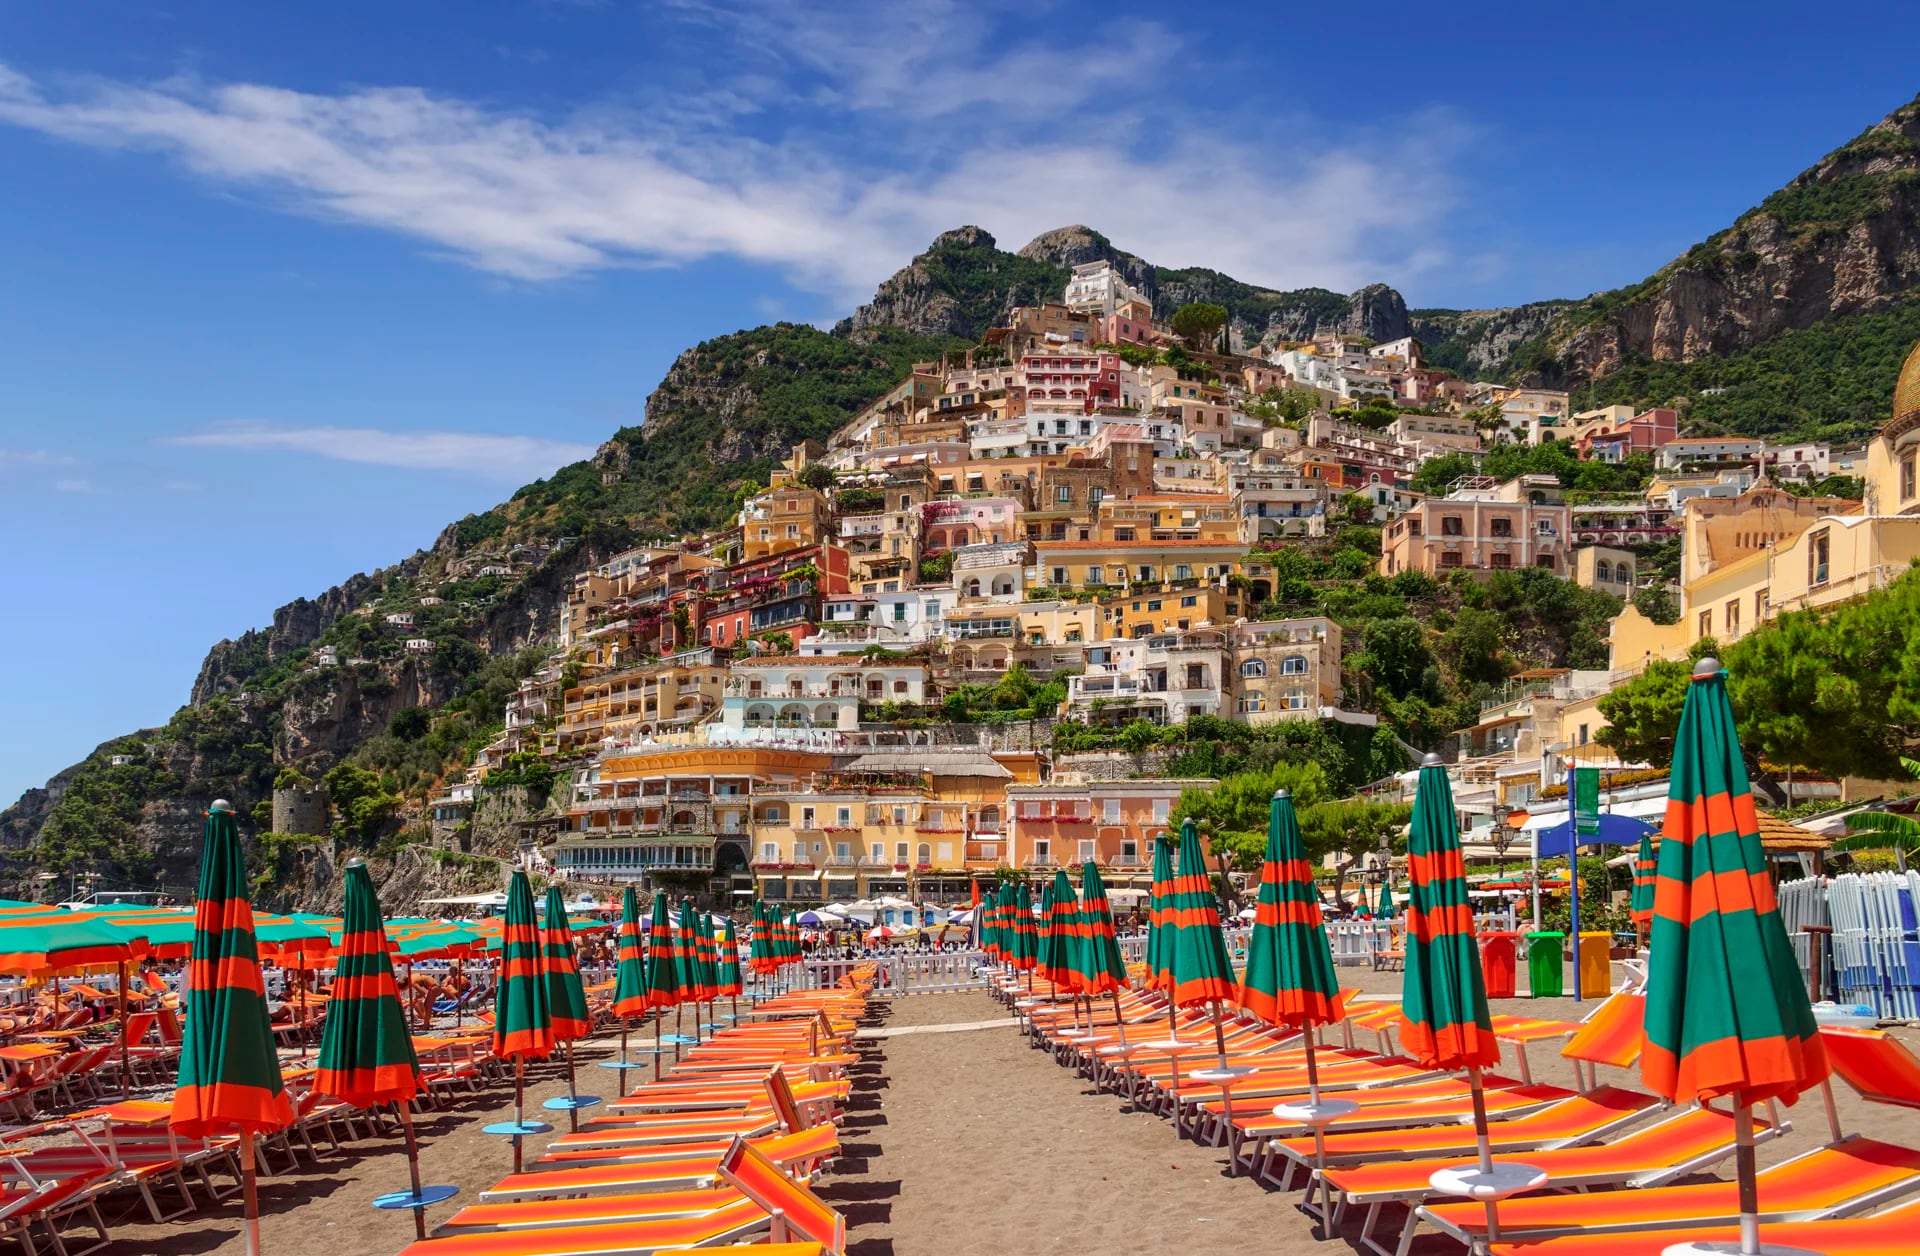 A Positano se puede llegar desde Amalfi en ferry. El trayecto dura unos 20 minutos